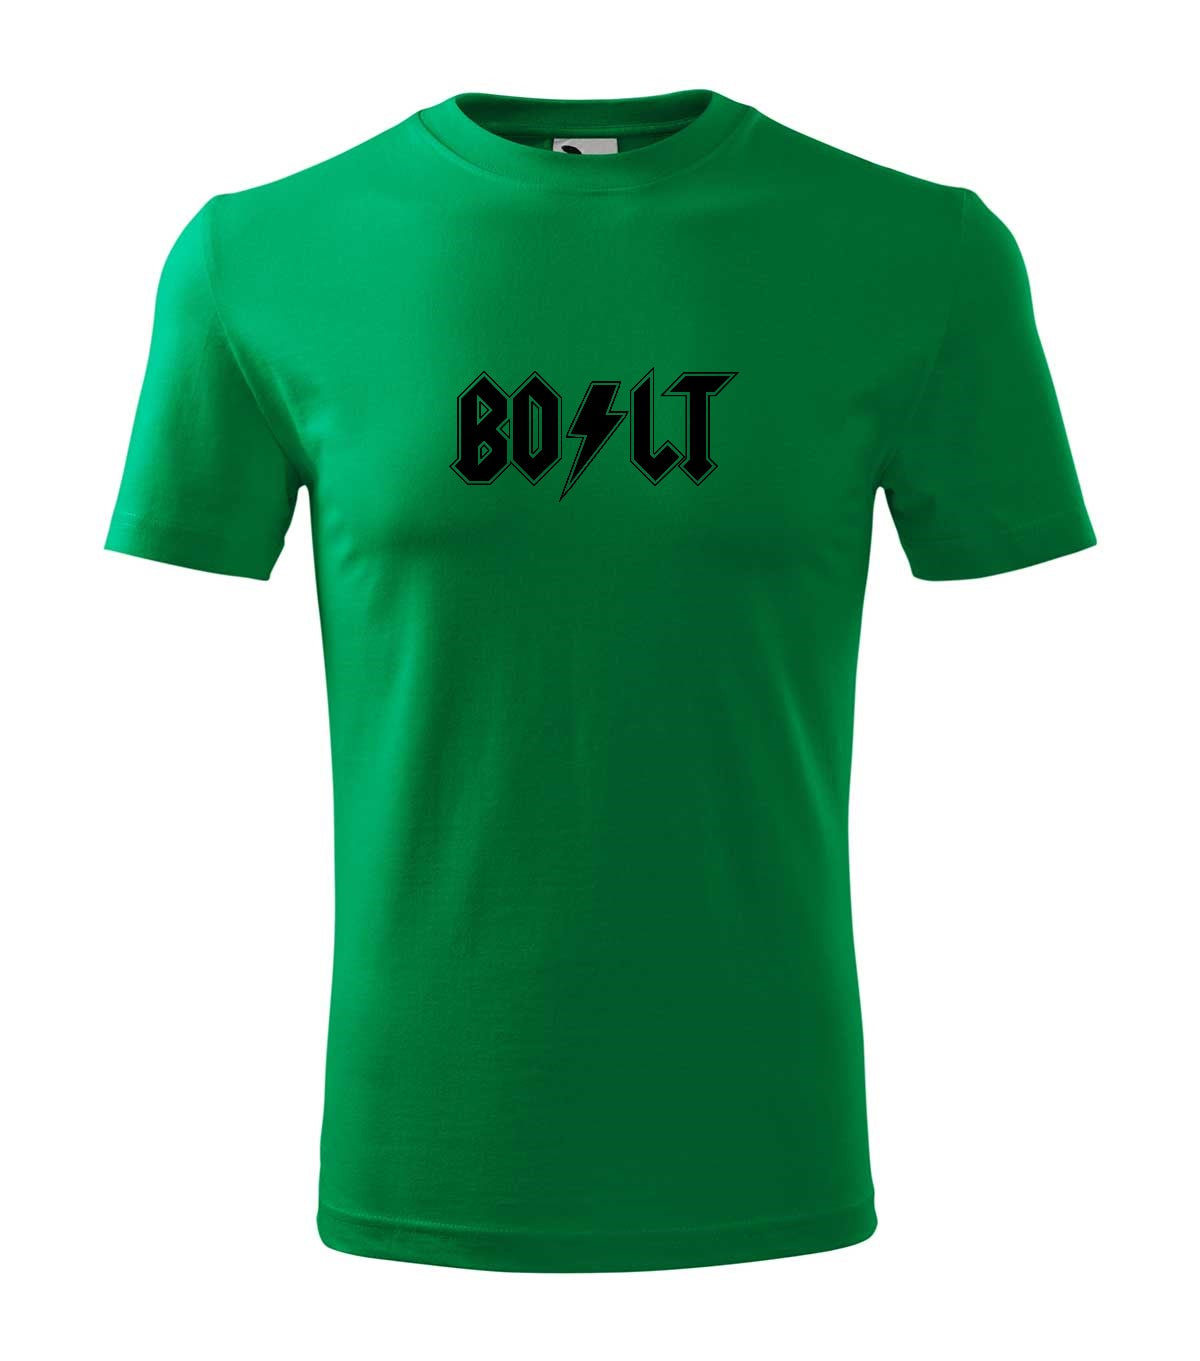 Bolt férfi póló